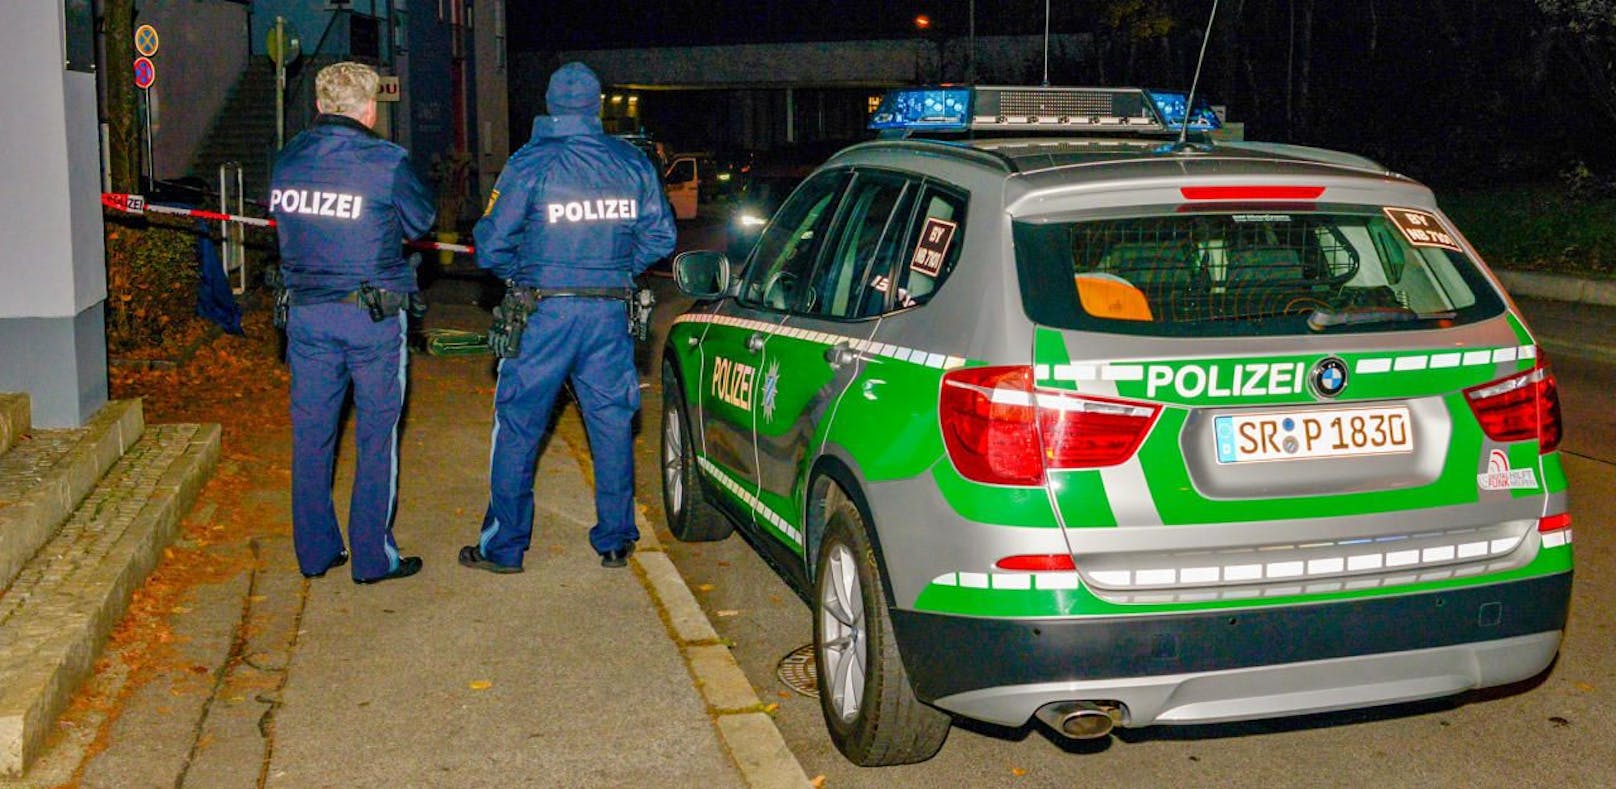 33-Jähriger stirbt nach Messerattacke in Passau